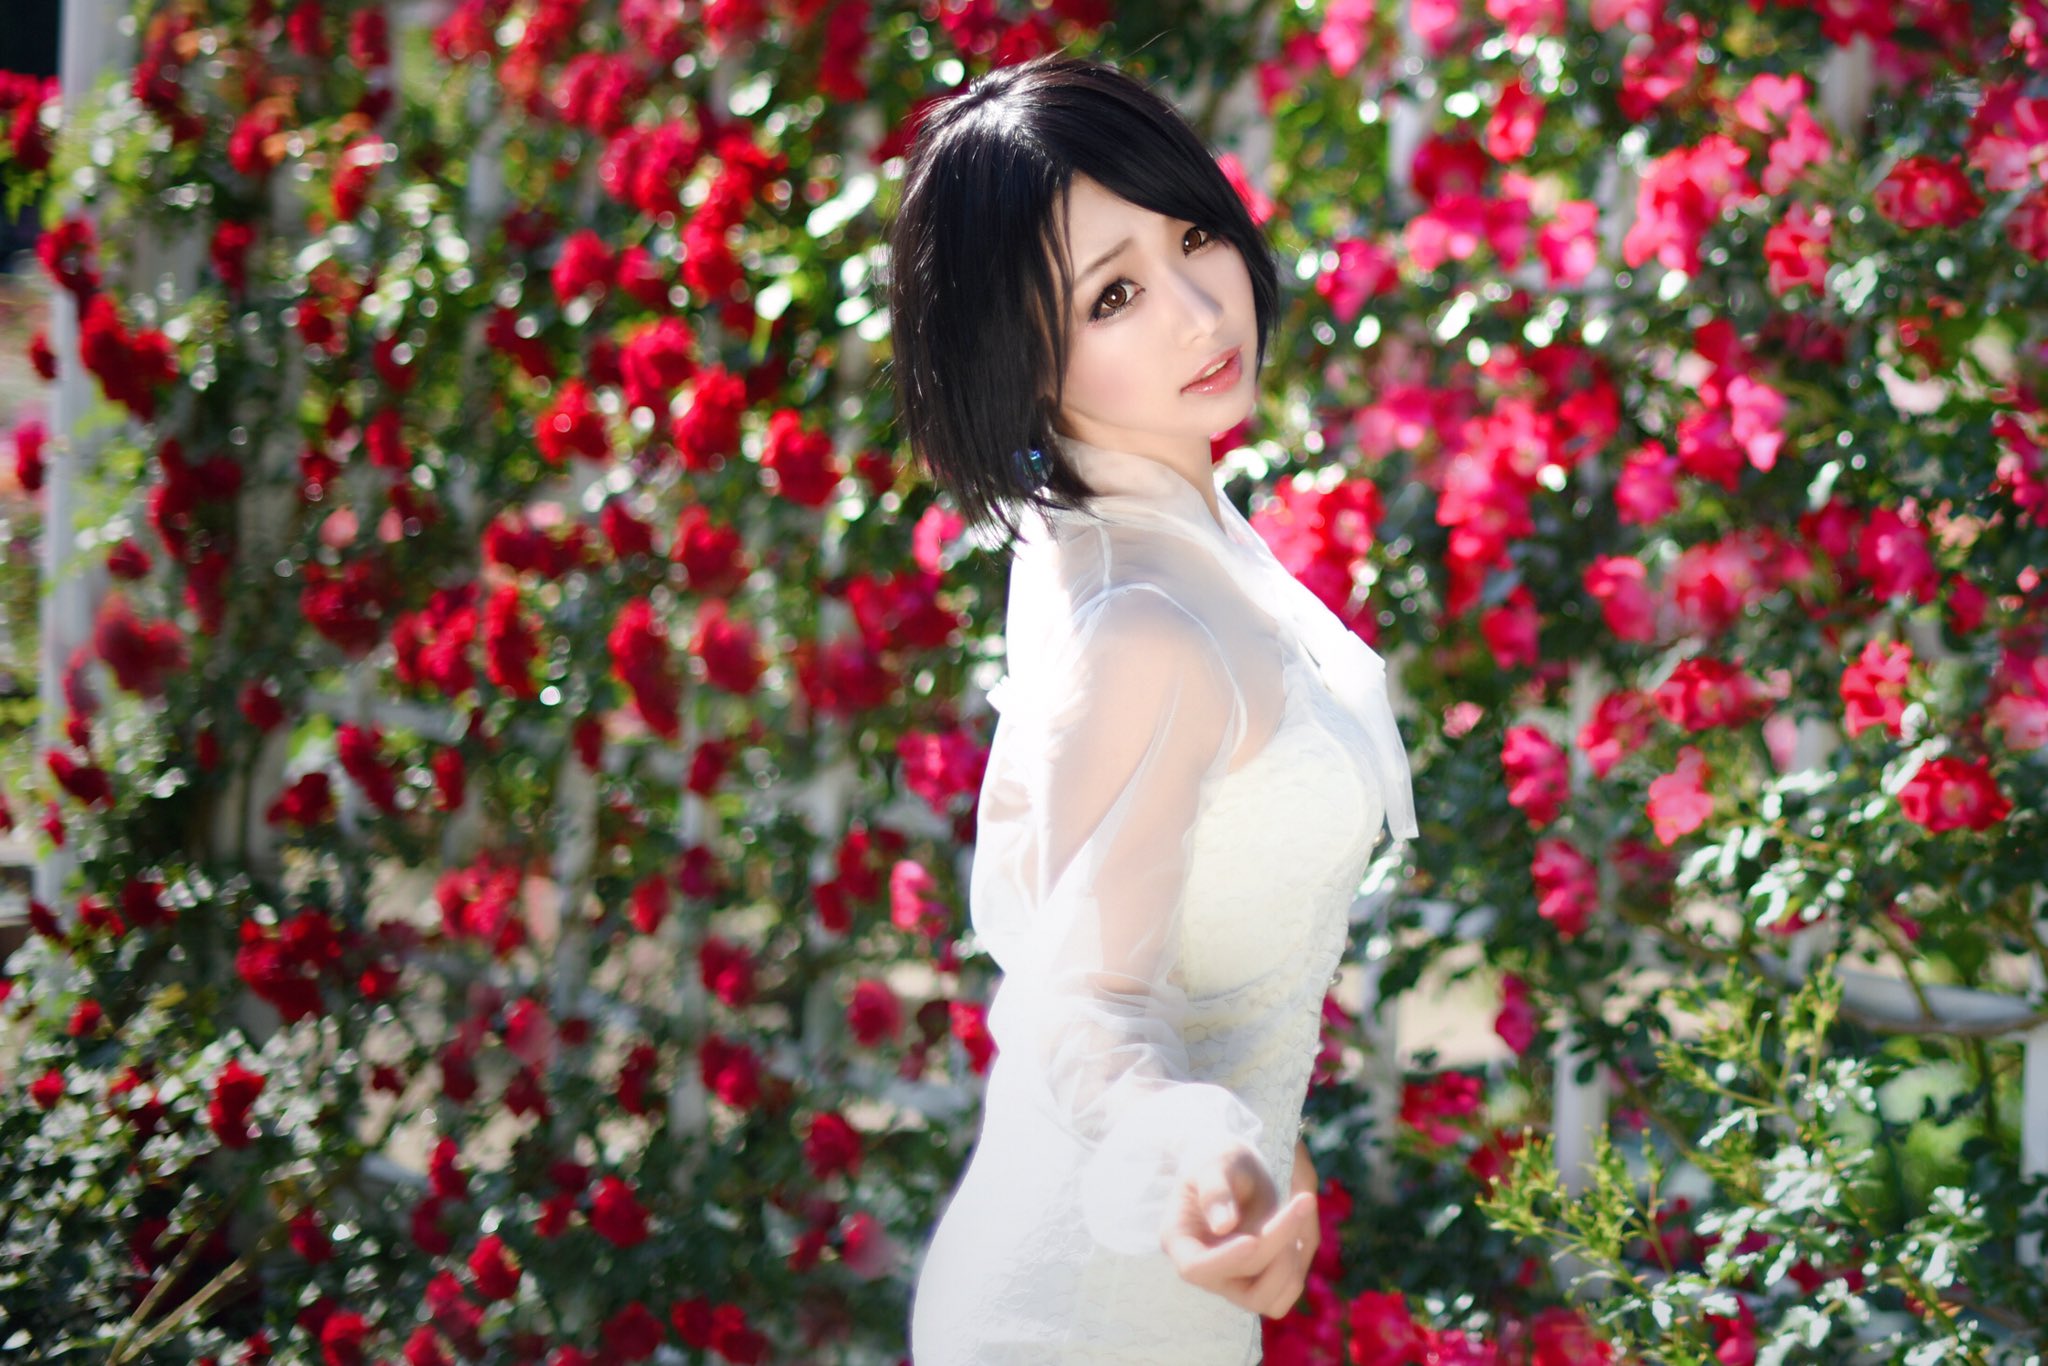 Asian Japanese Women Model Rose Flowers Brunette Shoulder Length Hair White Dress Fake Iris Looking  2048x1366